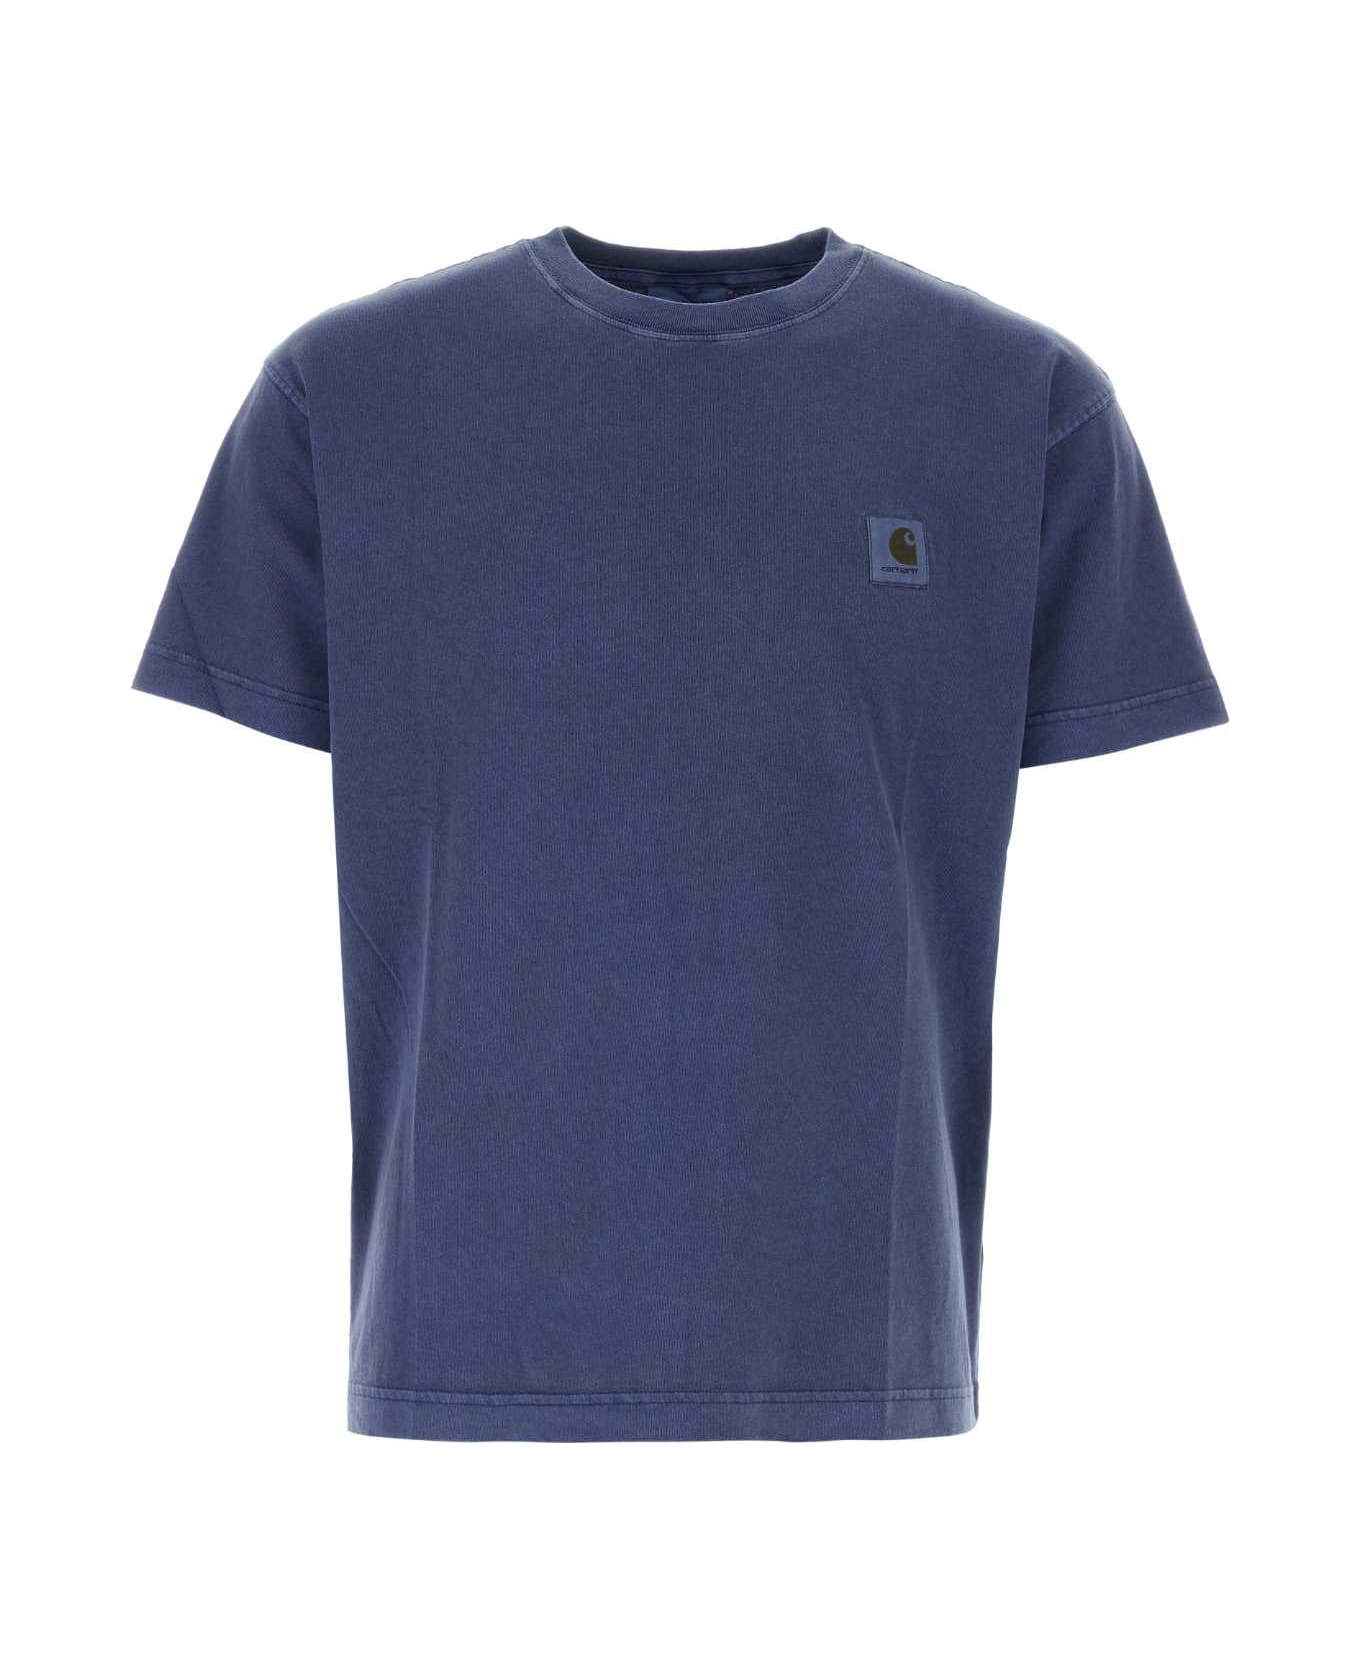 Carhartt Air Force Blue Cotton Oversize S/s Nelson T-shirt - ELDER